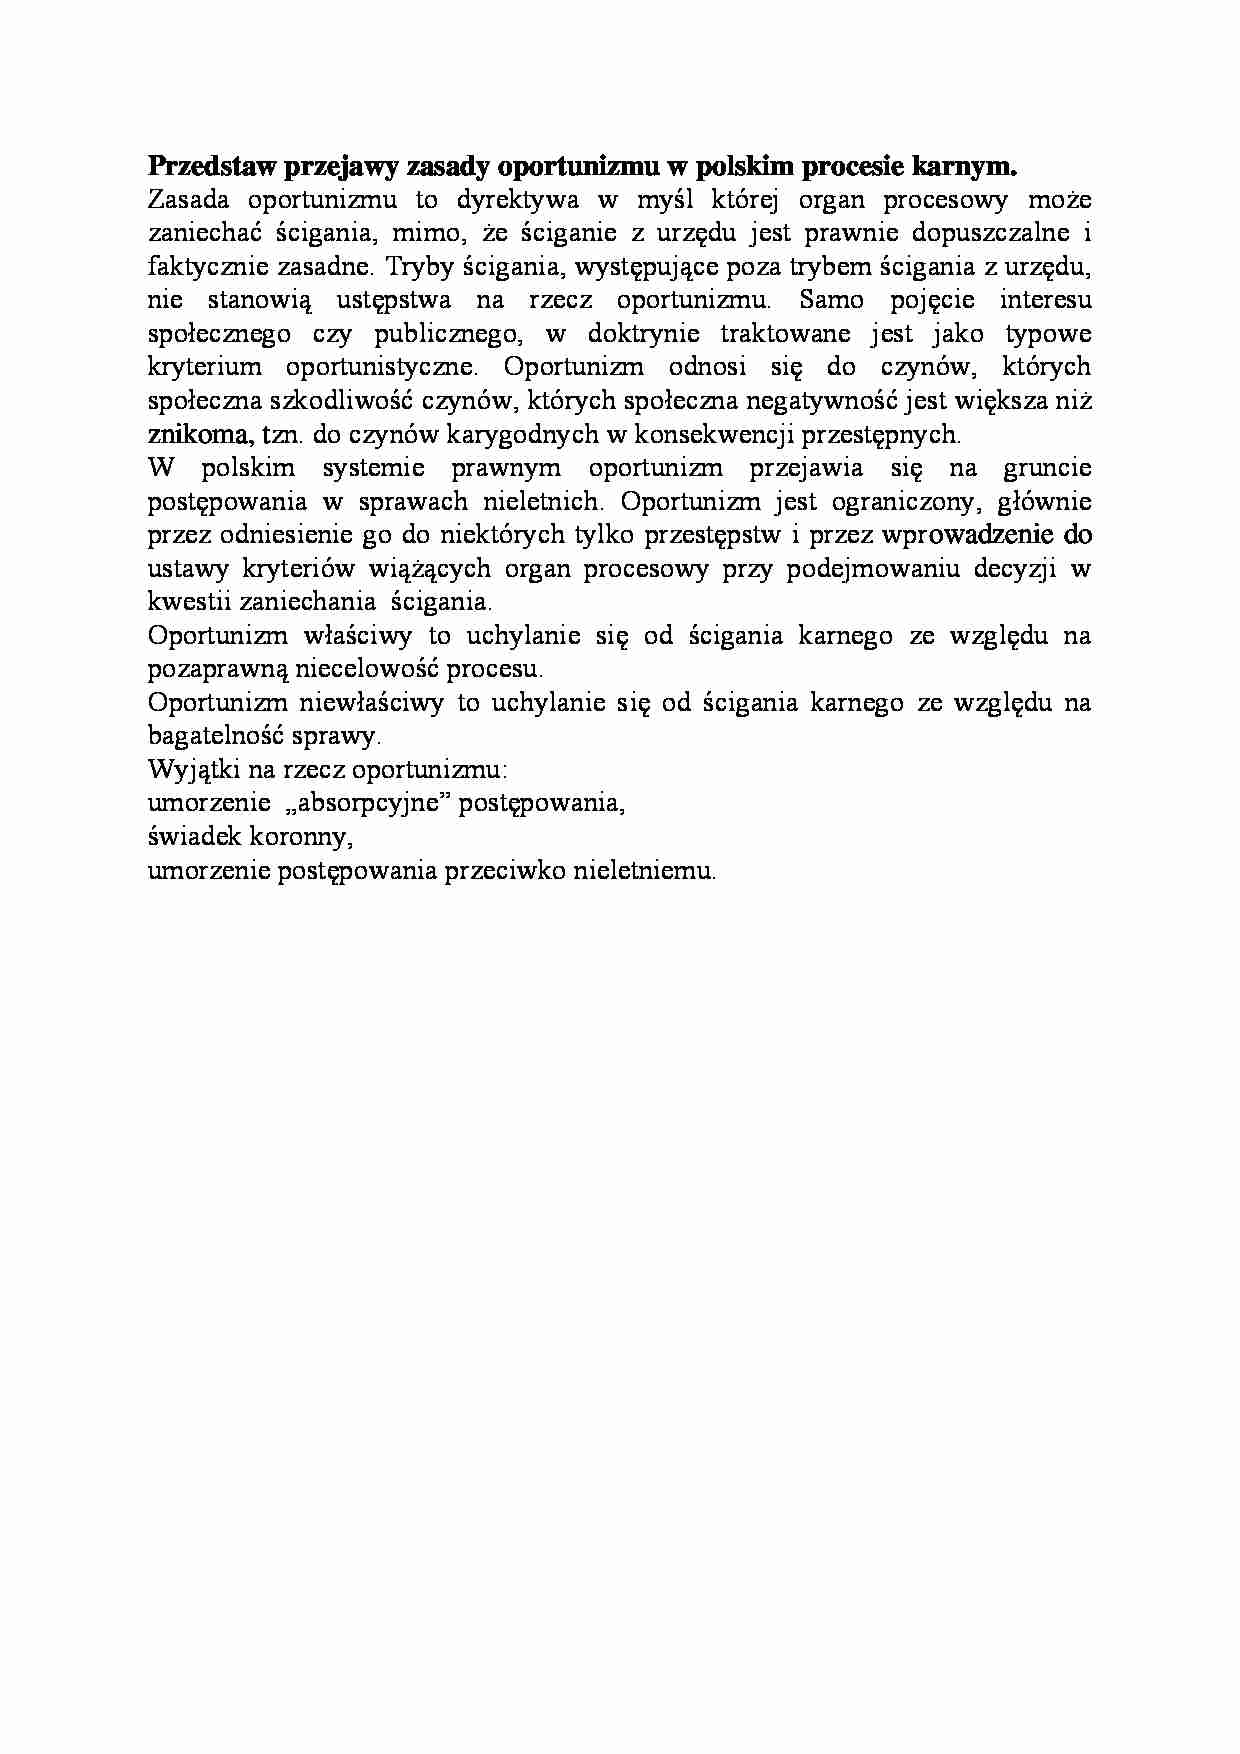 Przejawy zasady oportunizmu w polskim procesie karnym-opracowanie - strona 1